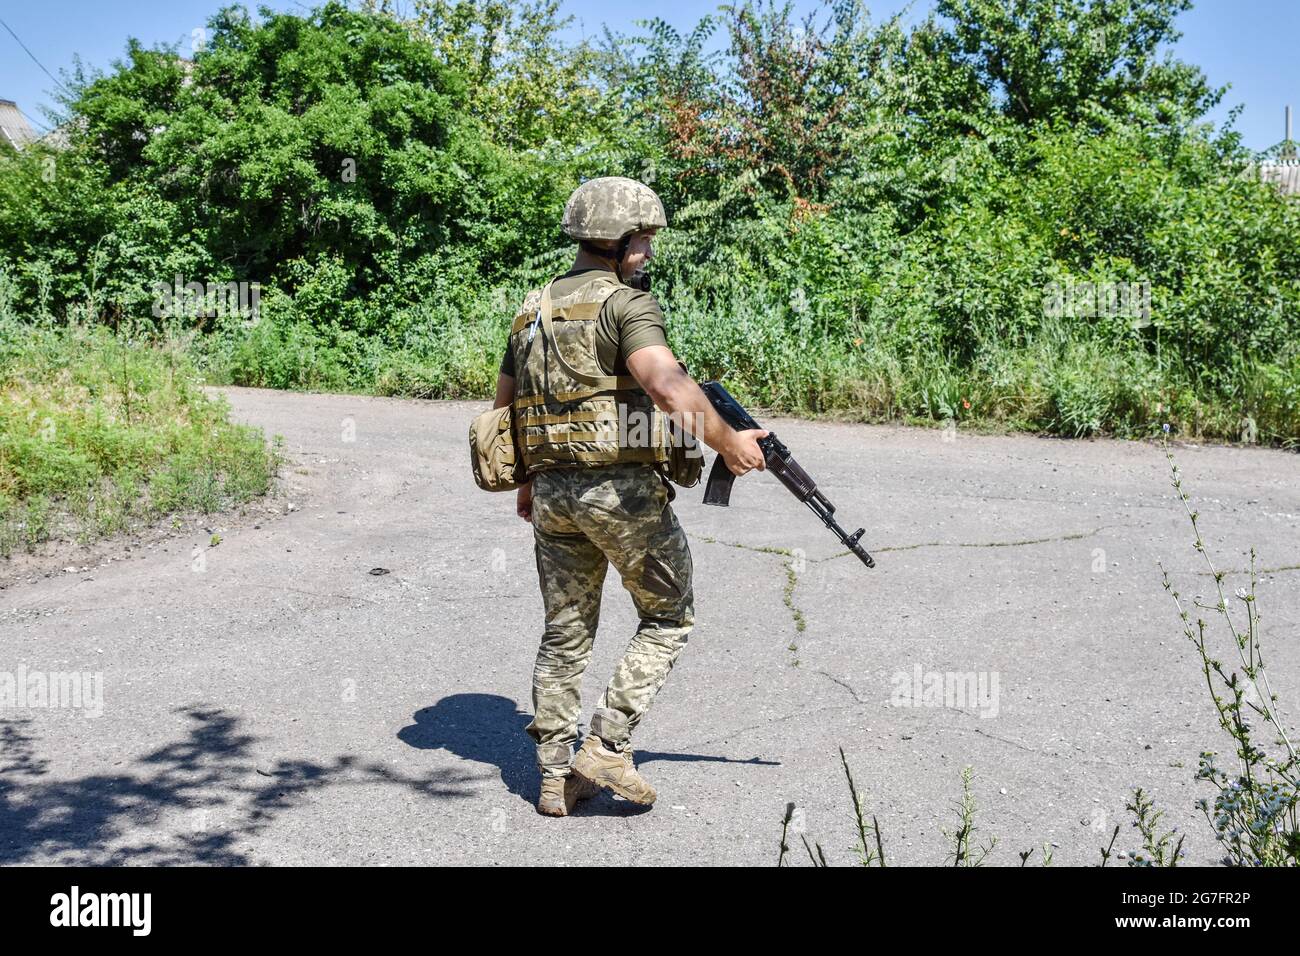 Ukrainischer Soldat, der an einer verlassenen Straße im Vorort Marinka vorbei geht. Marinka, eine kleine Stadt in der Ostukraine, liegt an der Front des Konflikts. Nach einem umfassenden Waffenstillstand in der zweiten Jahreshälfte 2020 haben die Spannungen in der Ostukraine im Jahr 2021 zugenommen. Die Ukraine verfügt mit rund 200,000 aktiven Soldaten über die drittgrößte Armee Europas. Stockfoto